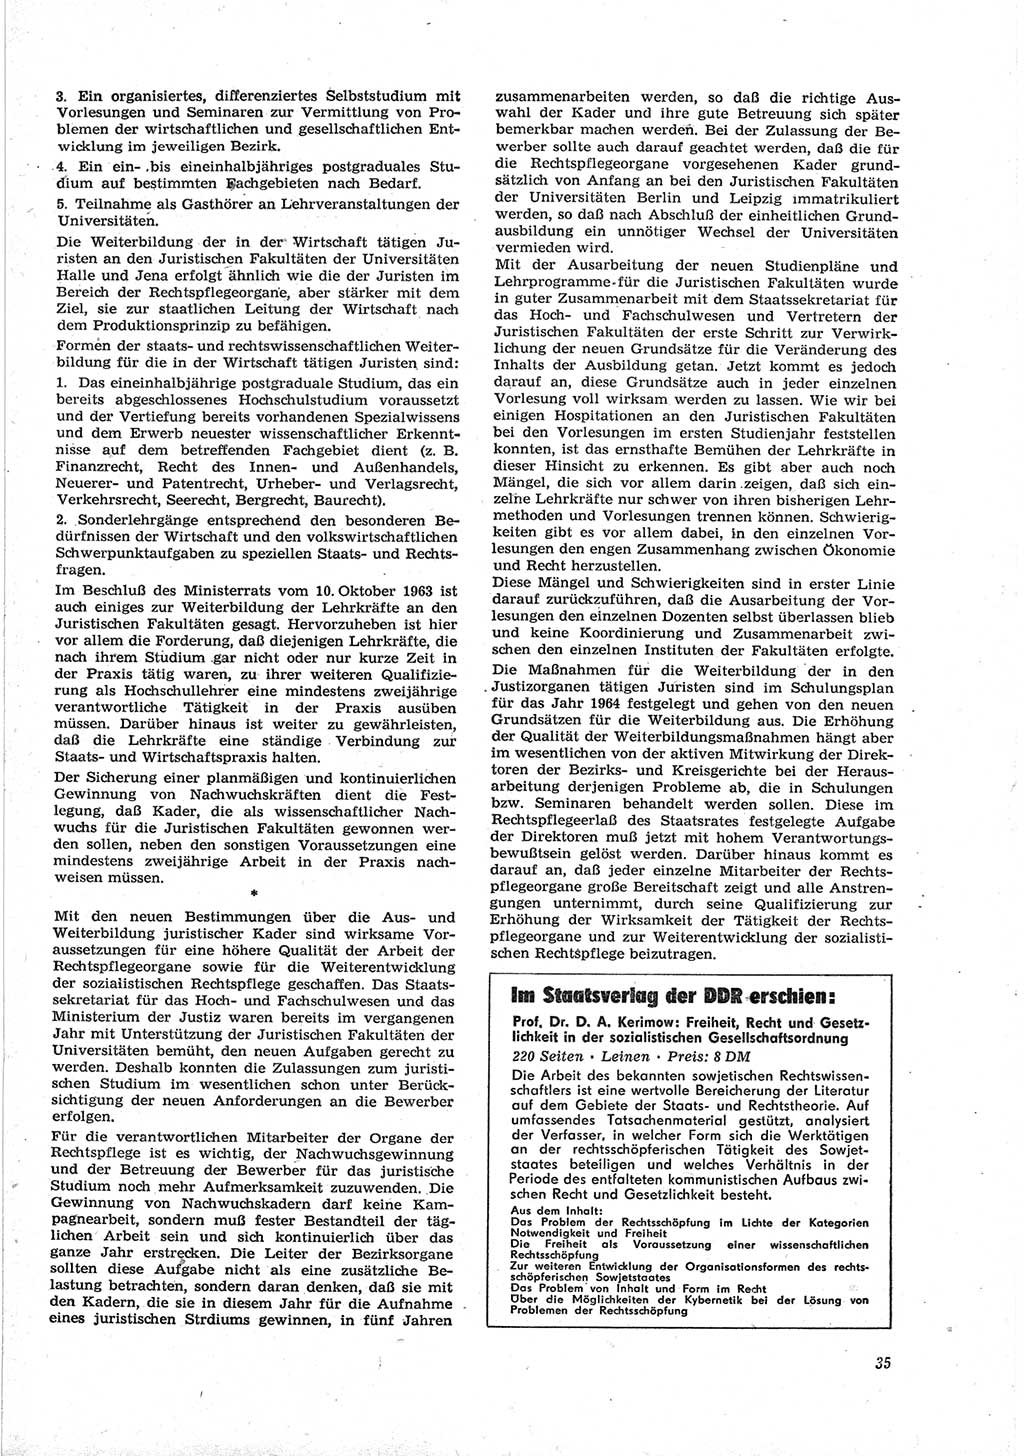 Neue Justiz (NJ), Zeitschrift für Recht und Rechtswissenschaft [Deutsche Demokratische Republik (DDR)], 18. Jahrgang 1964, Seite 35 (NJ DDR 1964, S. 35)